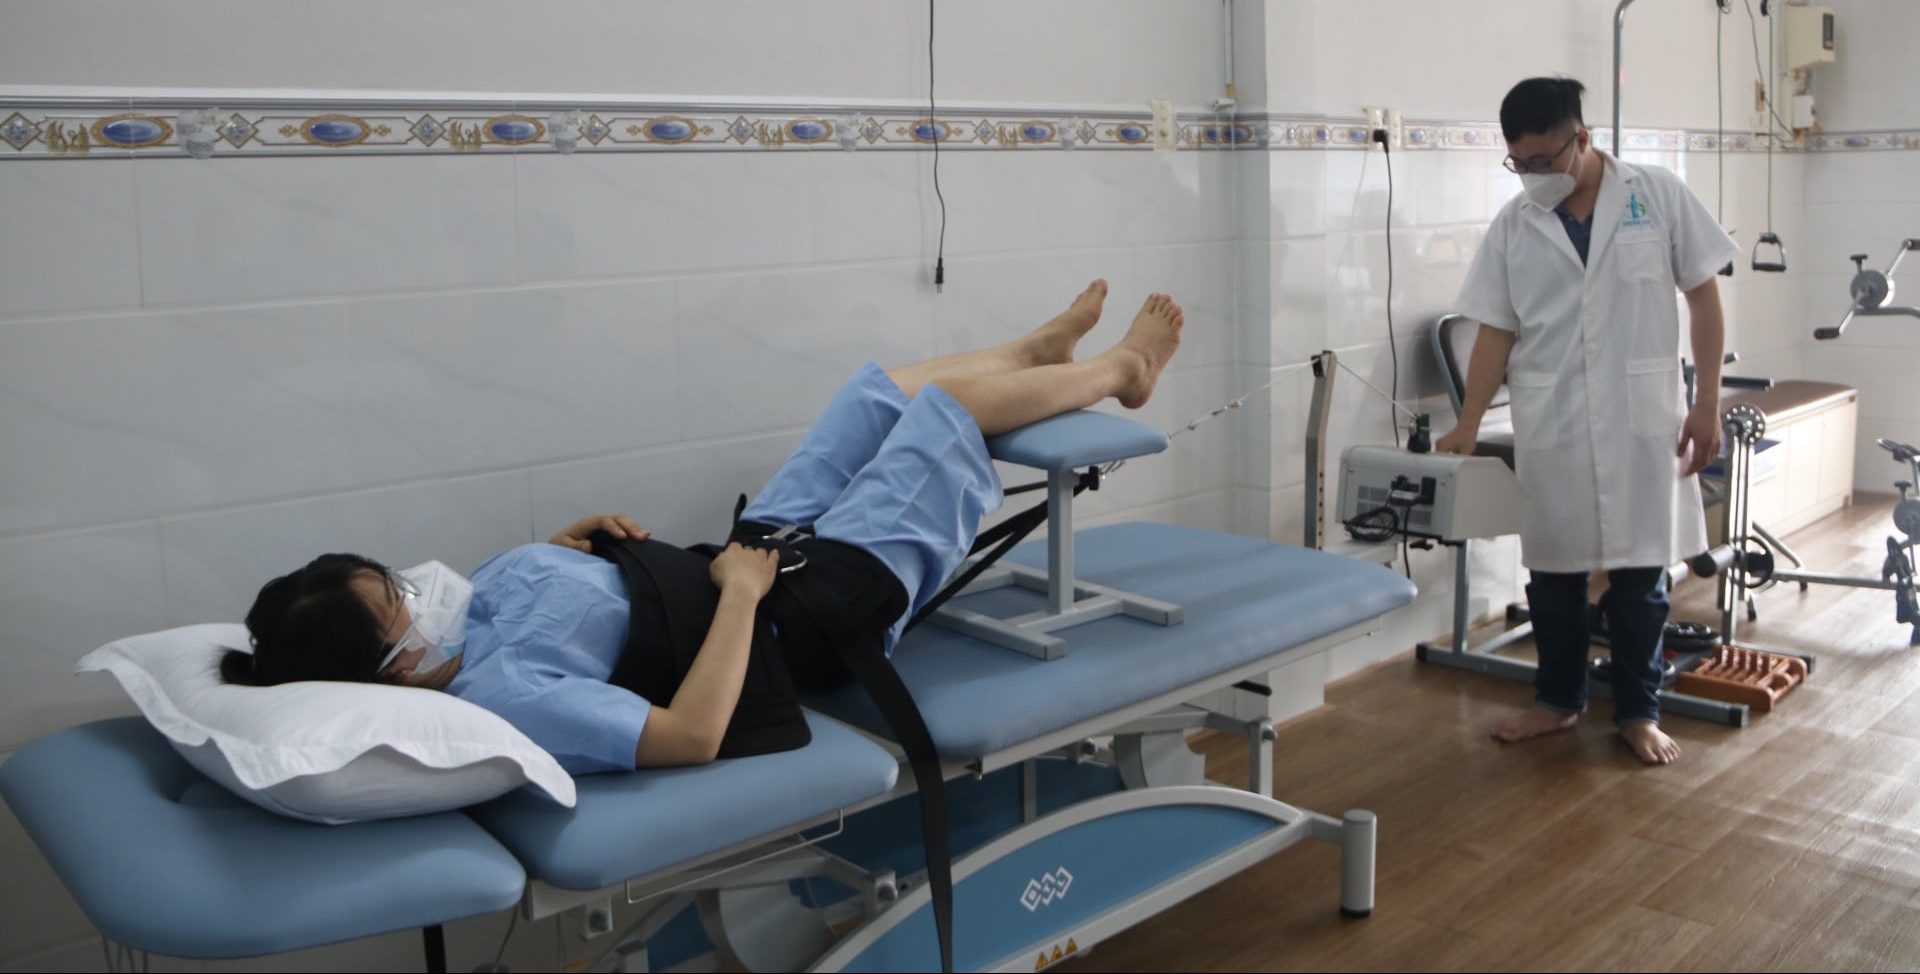 Phòng khám vật lý trị liệu tại Hóc Môn điều trị đau lưng bằng máy kéo giãn cột sống